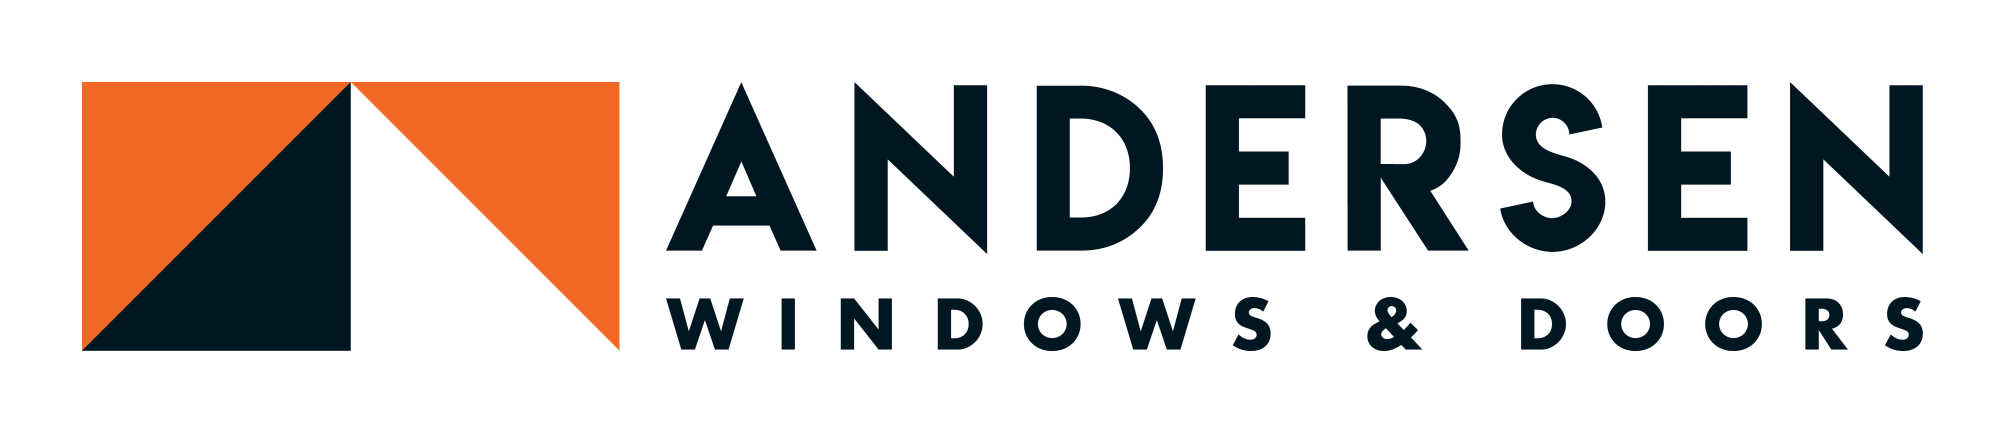 Andersen Windows & Doors Logo 